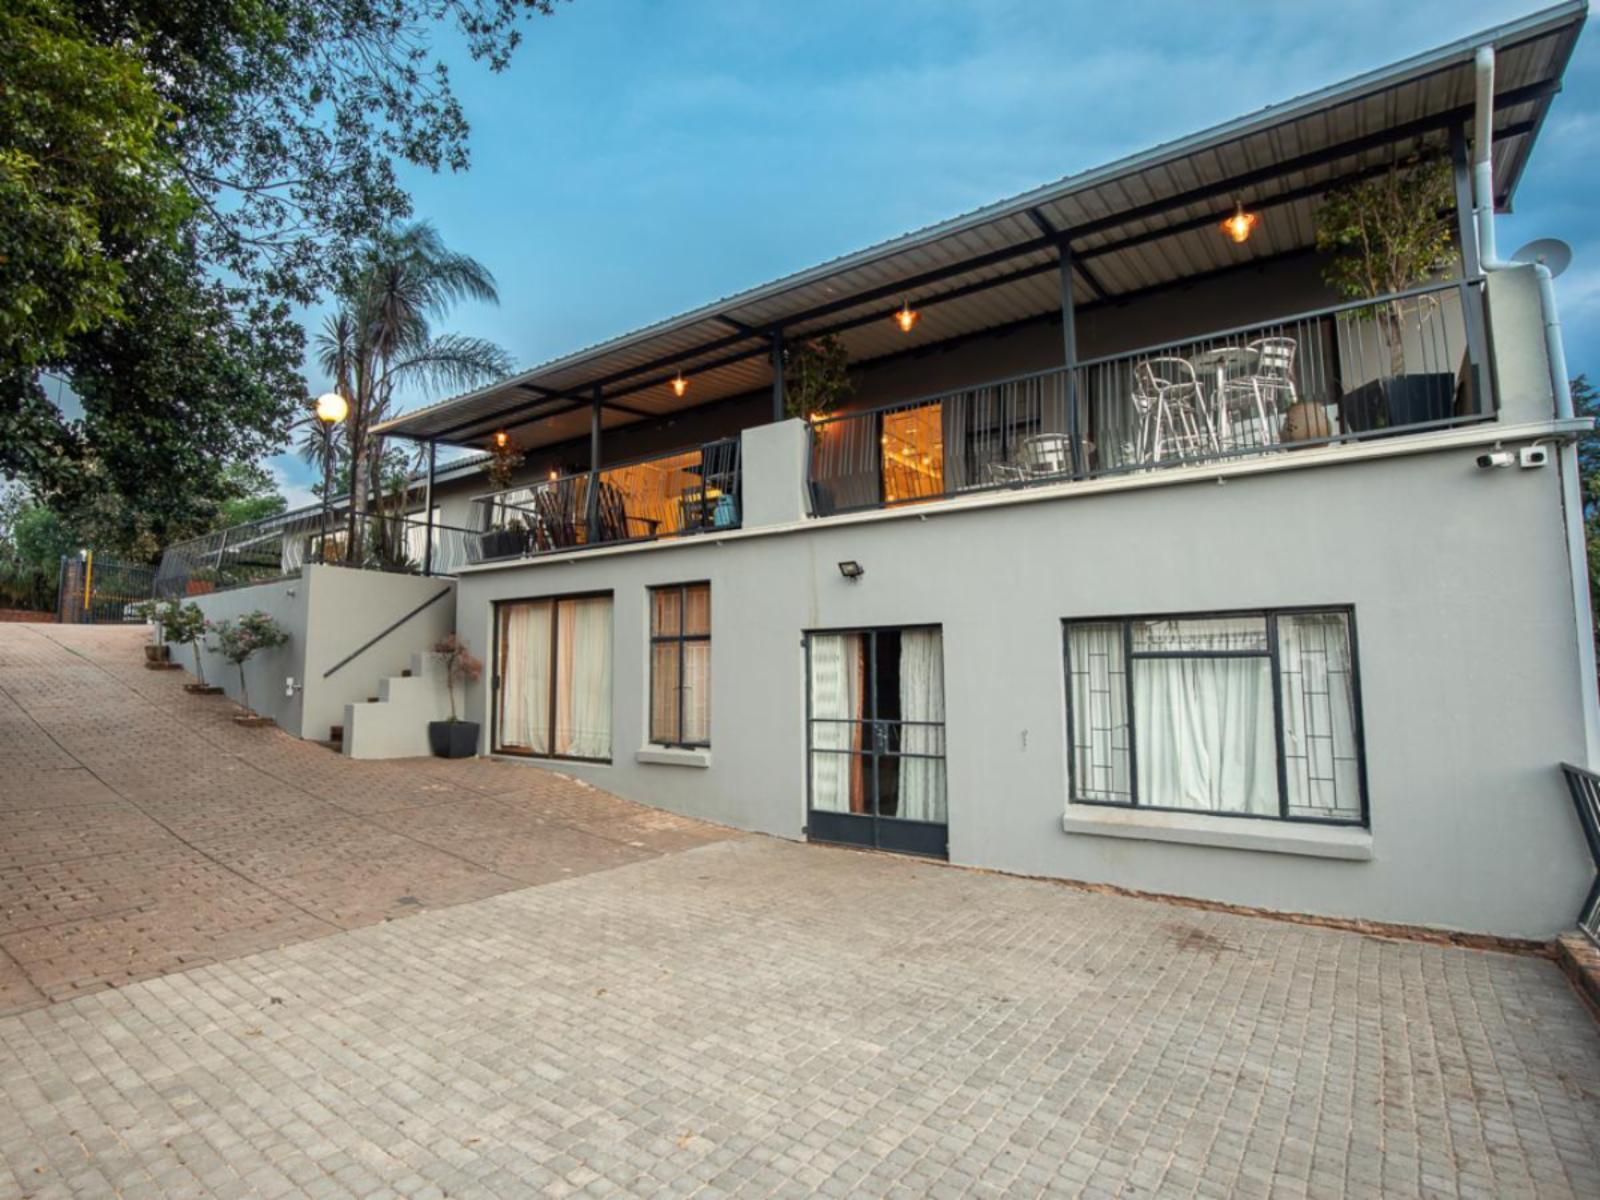 The Resting View Guesthouse Elardus Park Pretoria Tshwane Gauteng South Africa House, Building, Architecture, Palm Tree, Plant, Nature, Wood